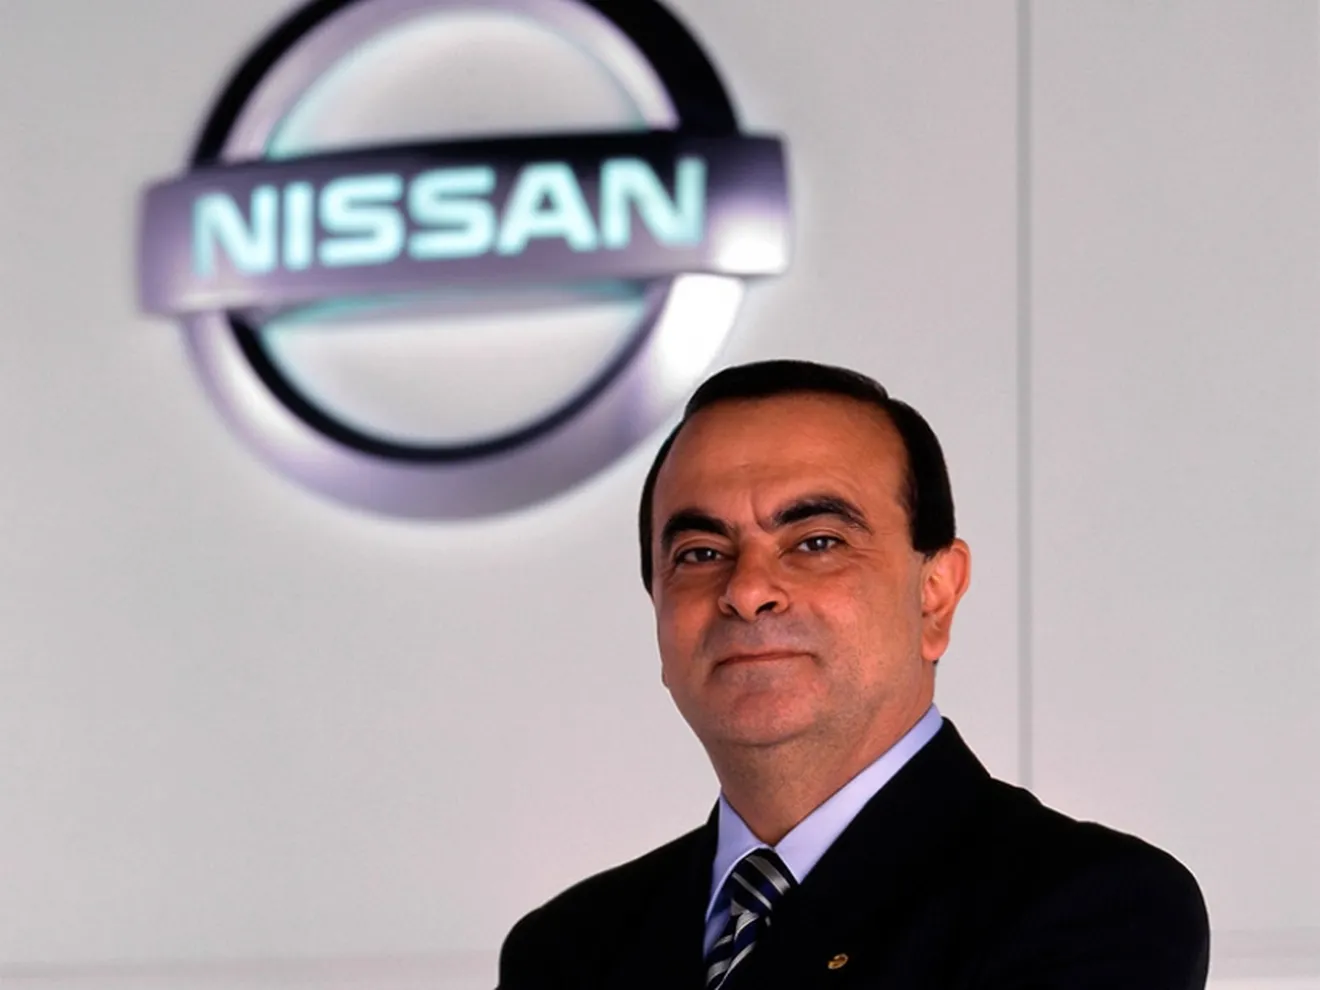 Carlos Ghosn desvela los planes de la tecnología del futuro de Nissan